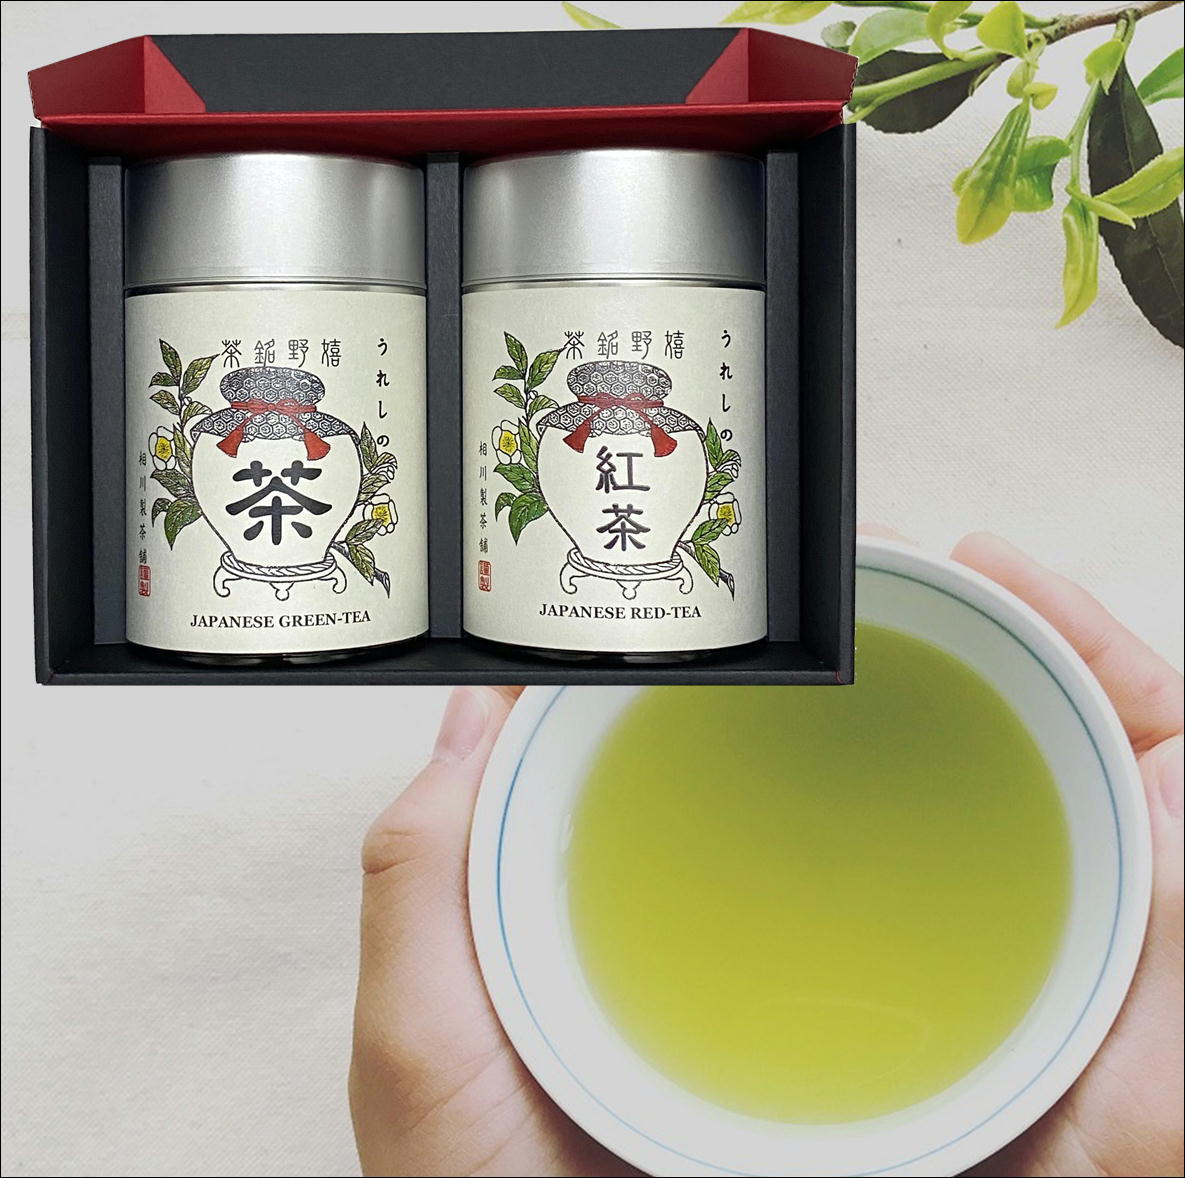 嬉野茶 玉緑茶 100g ☓ 2袋 - 茶